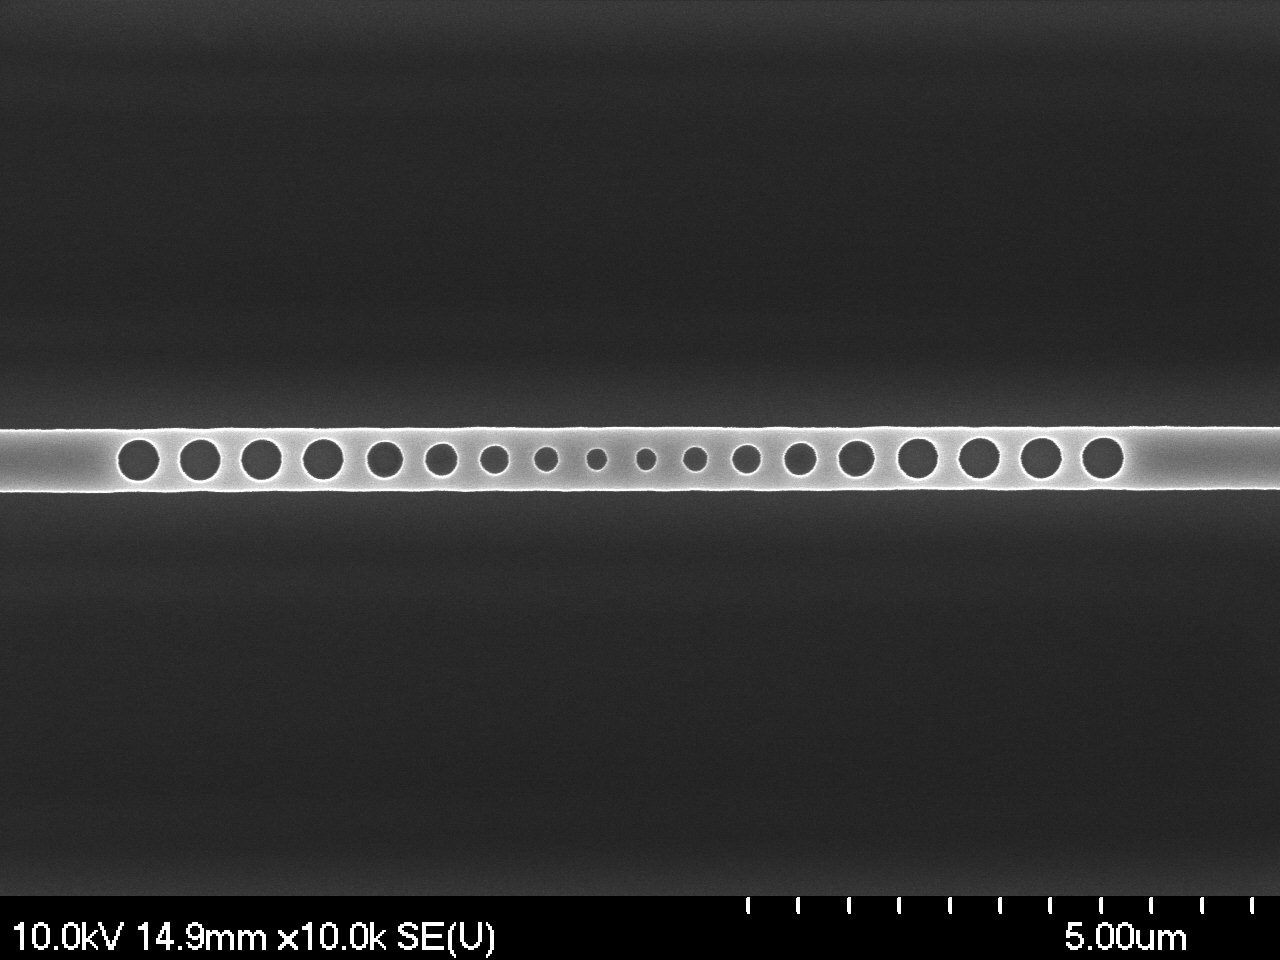 Ge photonic crystal nanobeam cavity